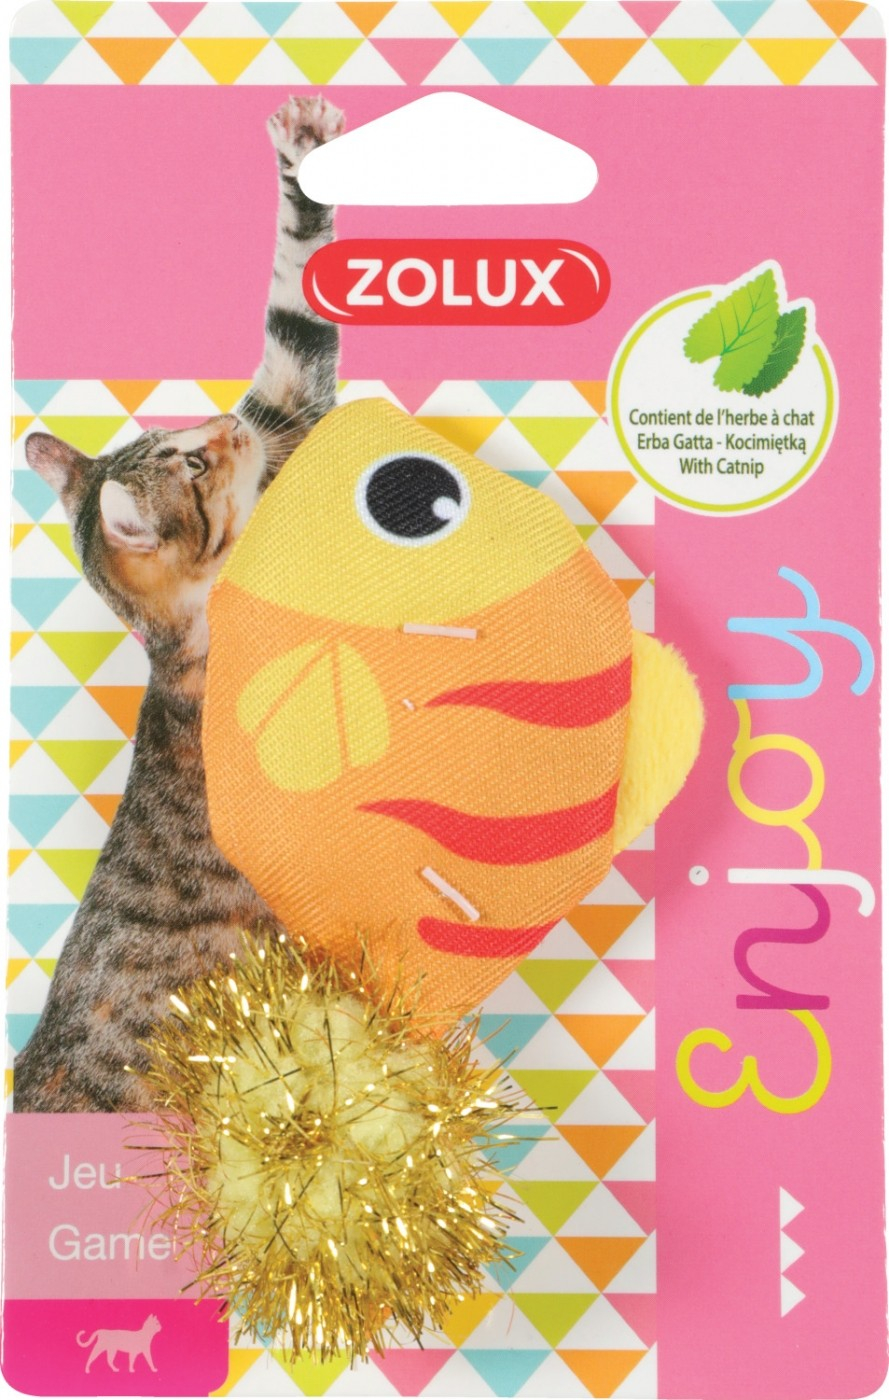 Zolux Brinquedo para gato adorável com Catnip - Peixe